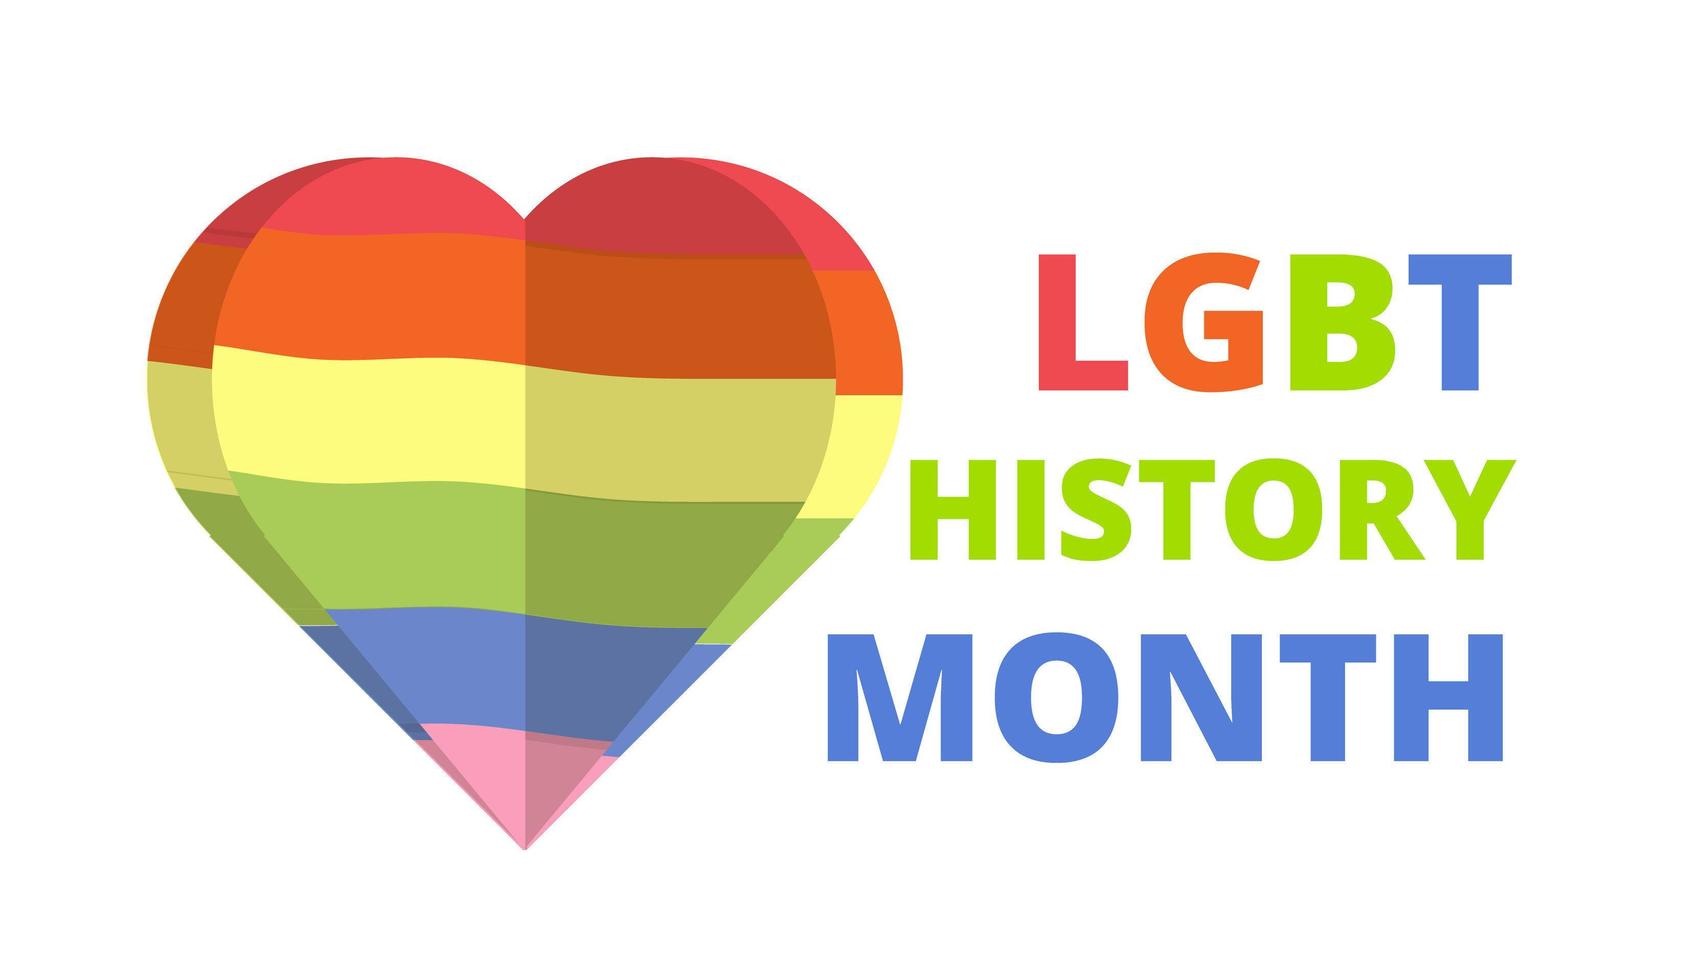 Hbt historia månad i oktober, vecka, dag. lesbiska, bisexuell flagga vektor